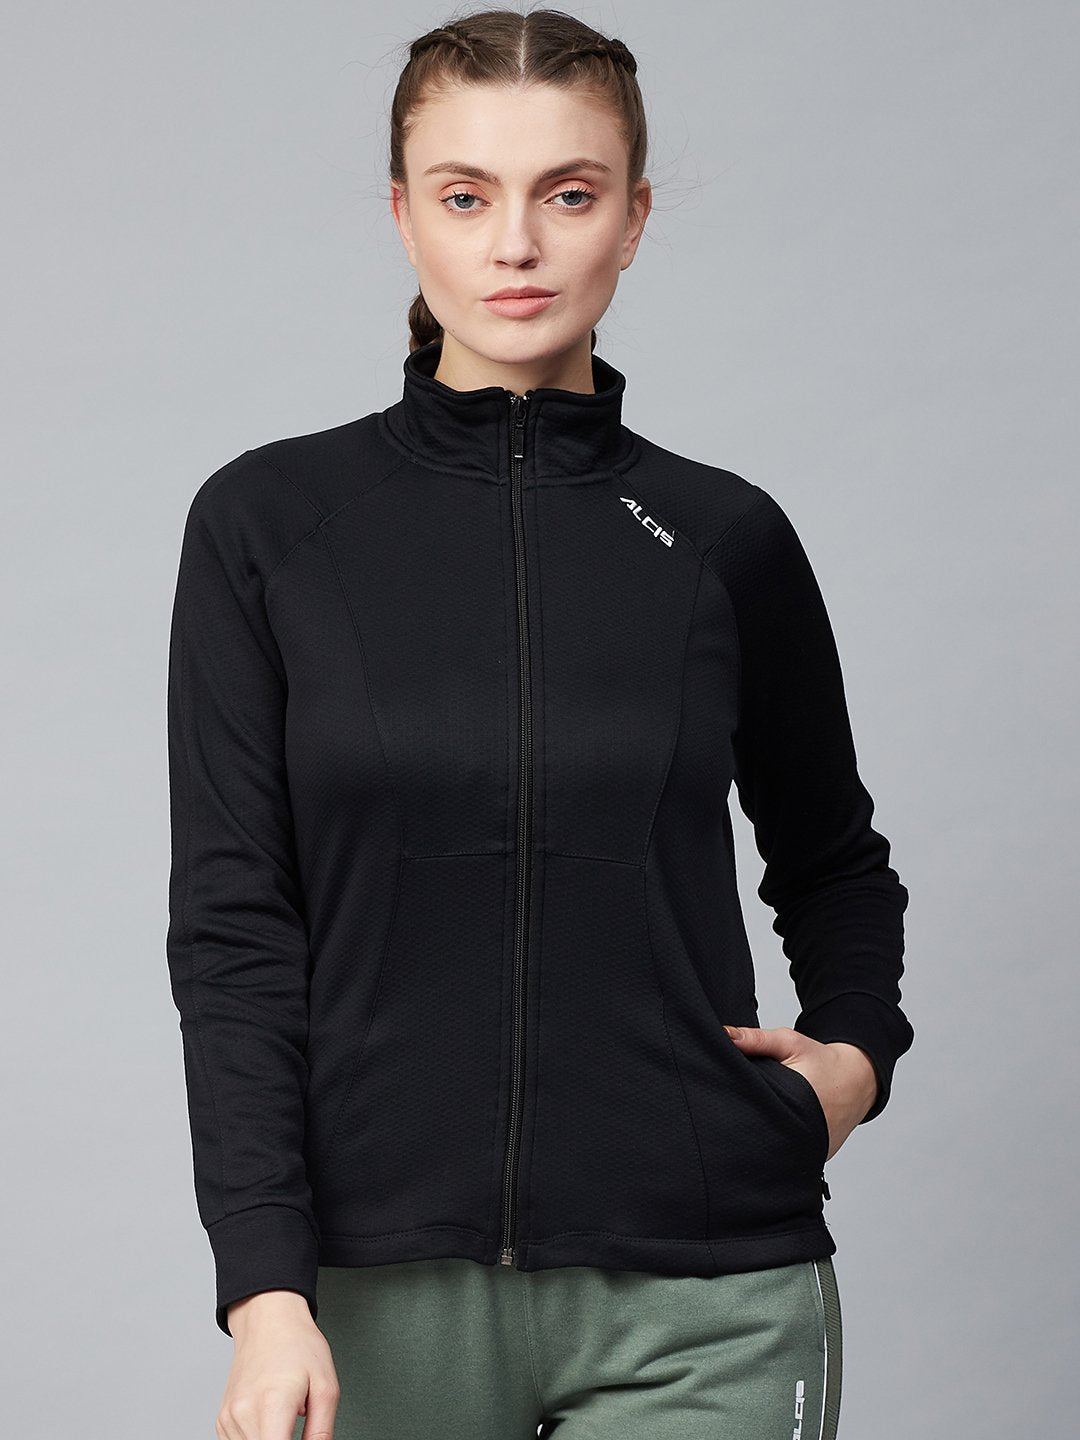 Alcis Women Black Solid Front-Open Sweatshirt